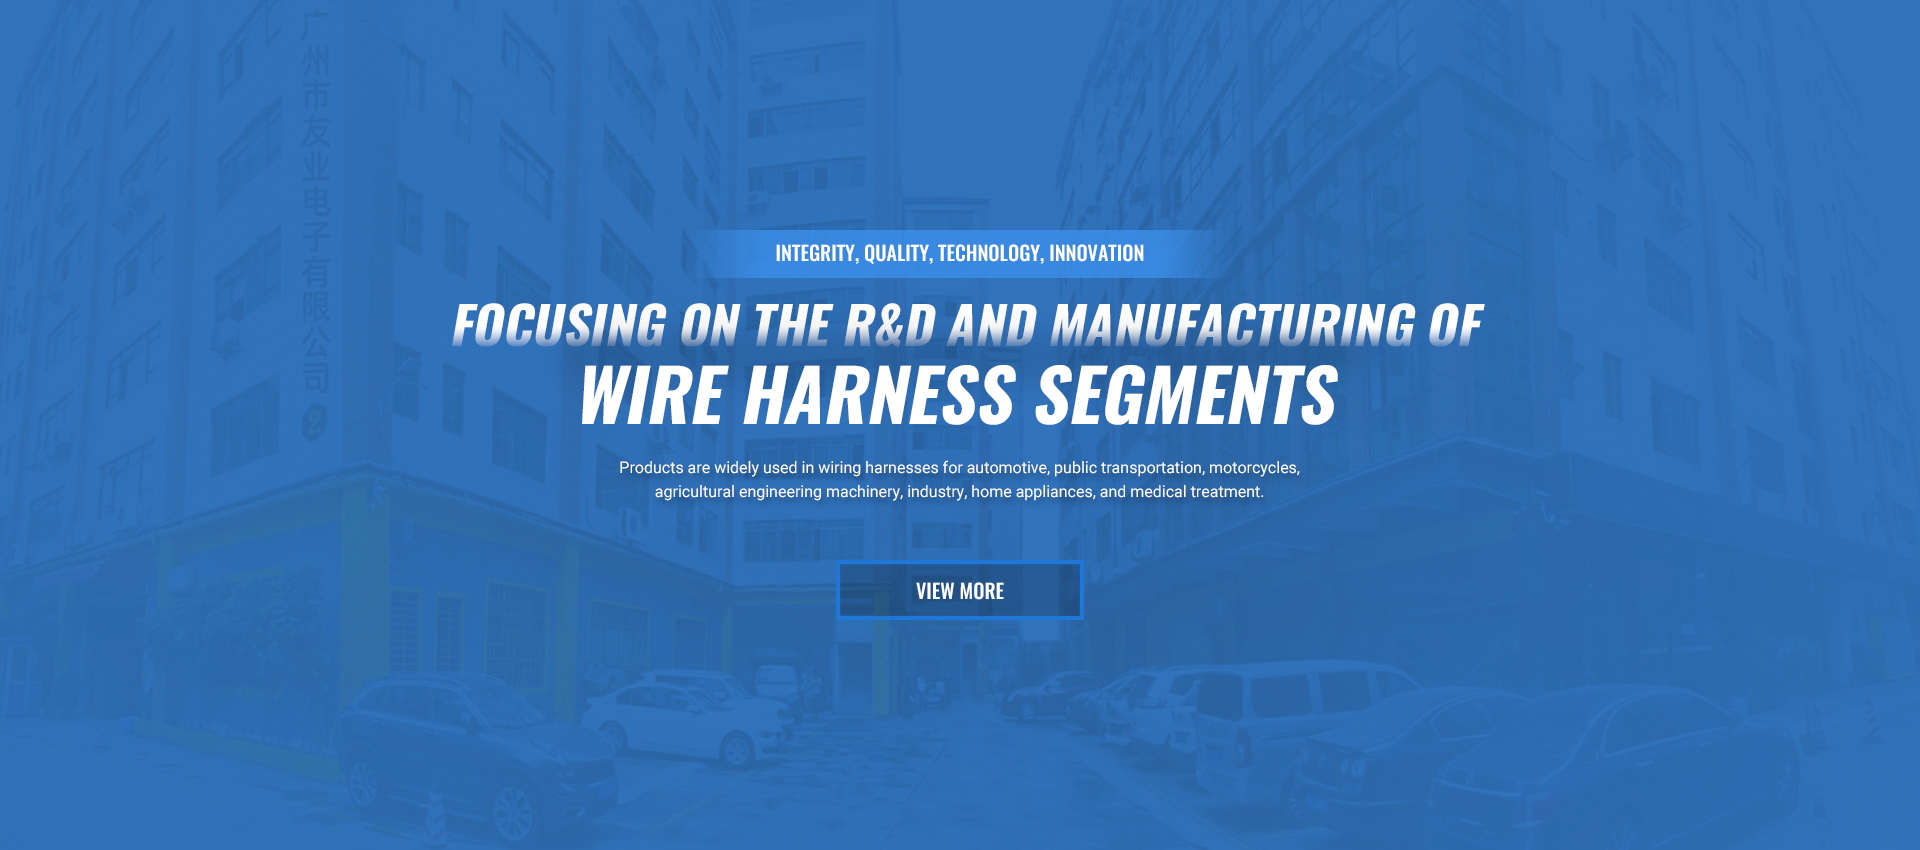 wire harness segments